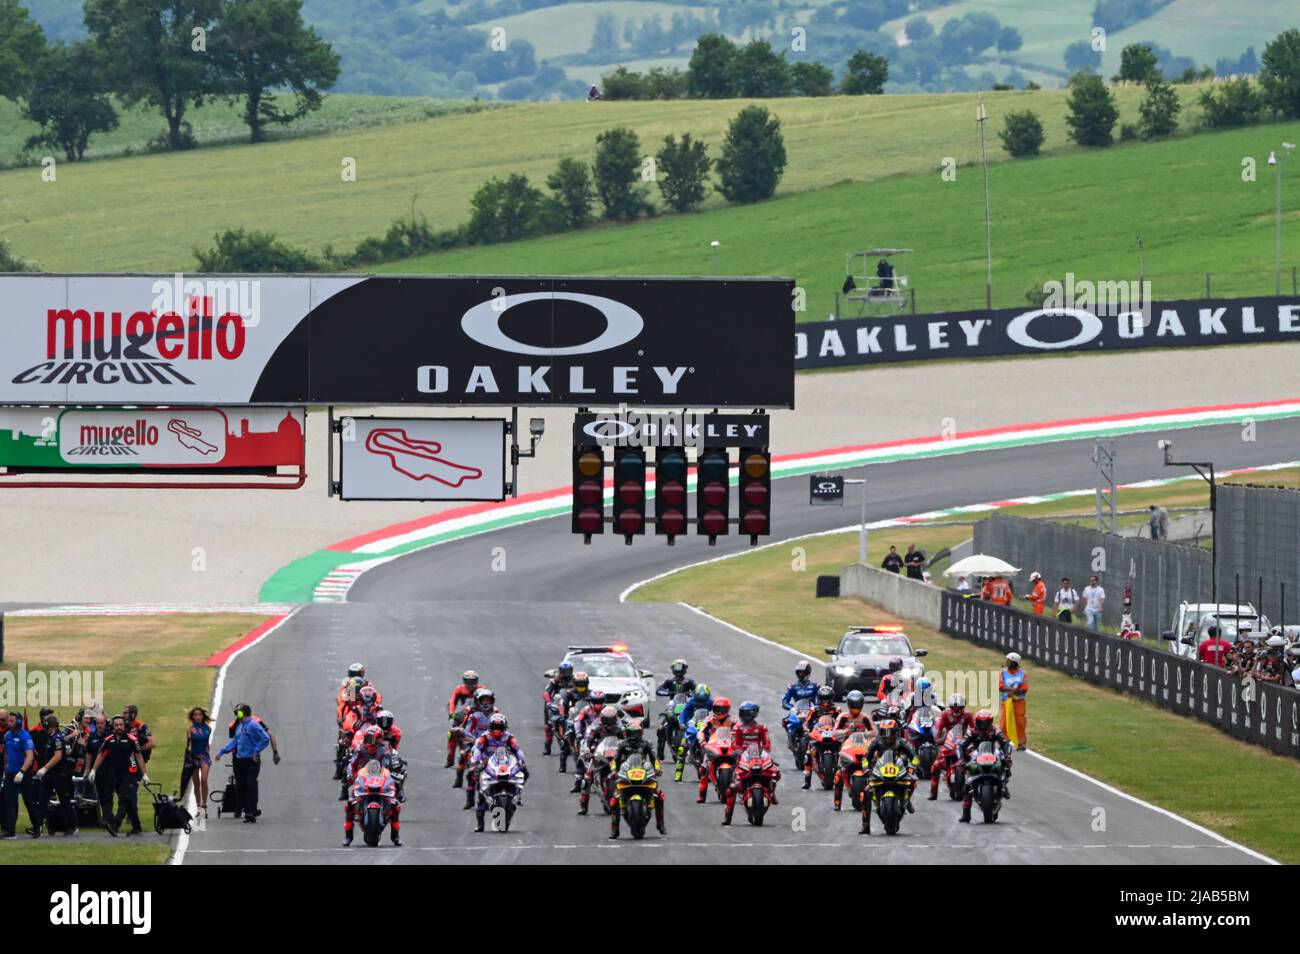 Startaufstellung des MotoGP-Rennens während des Gran Premio  dâ&#x80;&#X99;Italia Oakley Race, MotoGP-Weltmeisterschaft in Scarperia  (FI), Italien, Mai 29 2022 Stockfotografie - Alamy